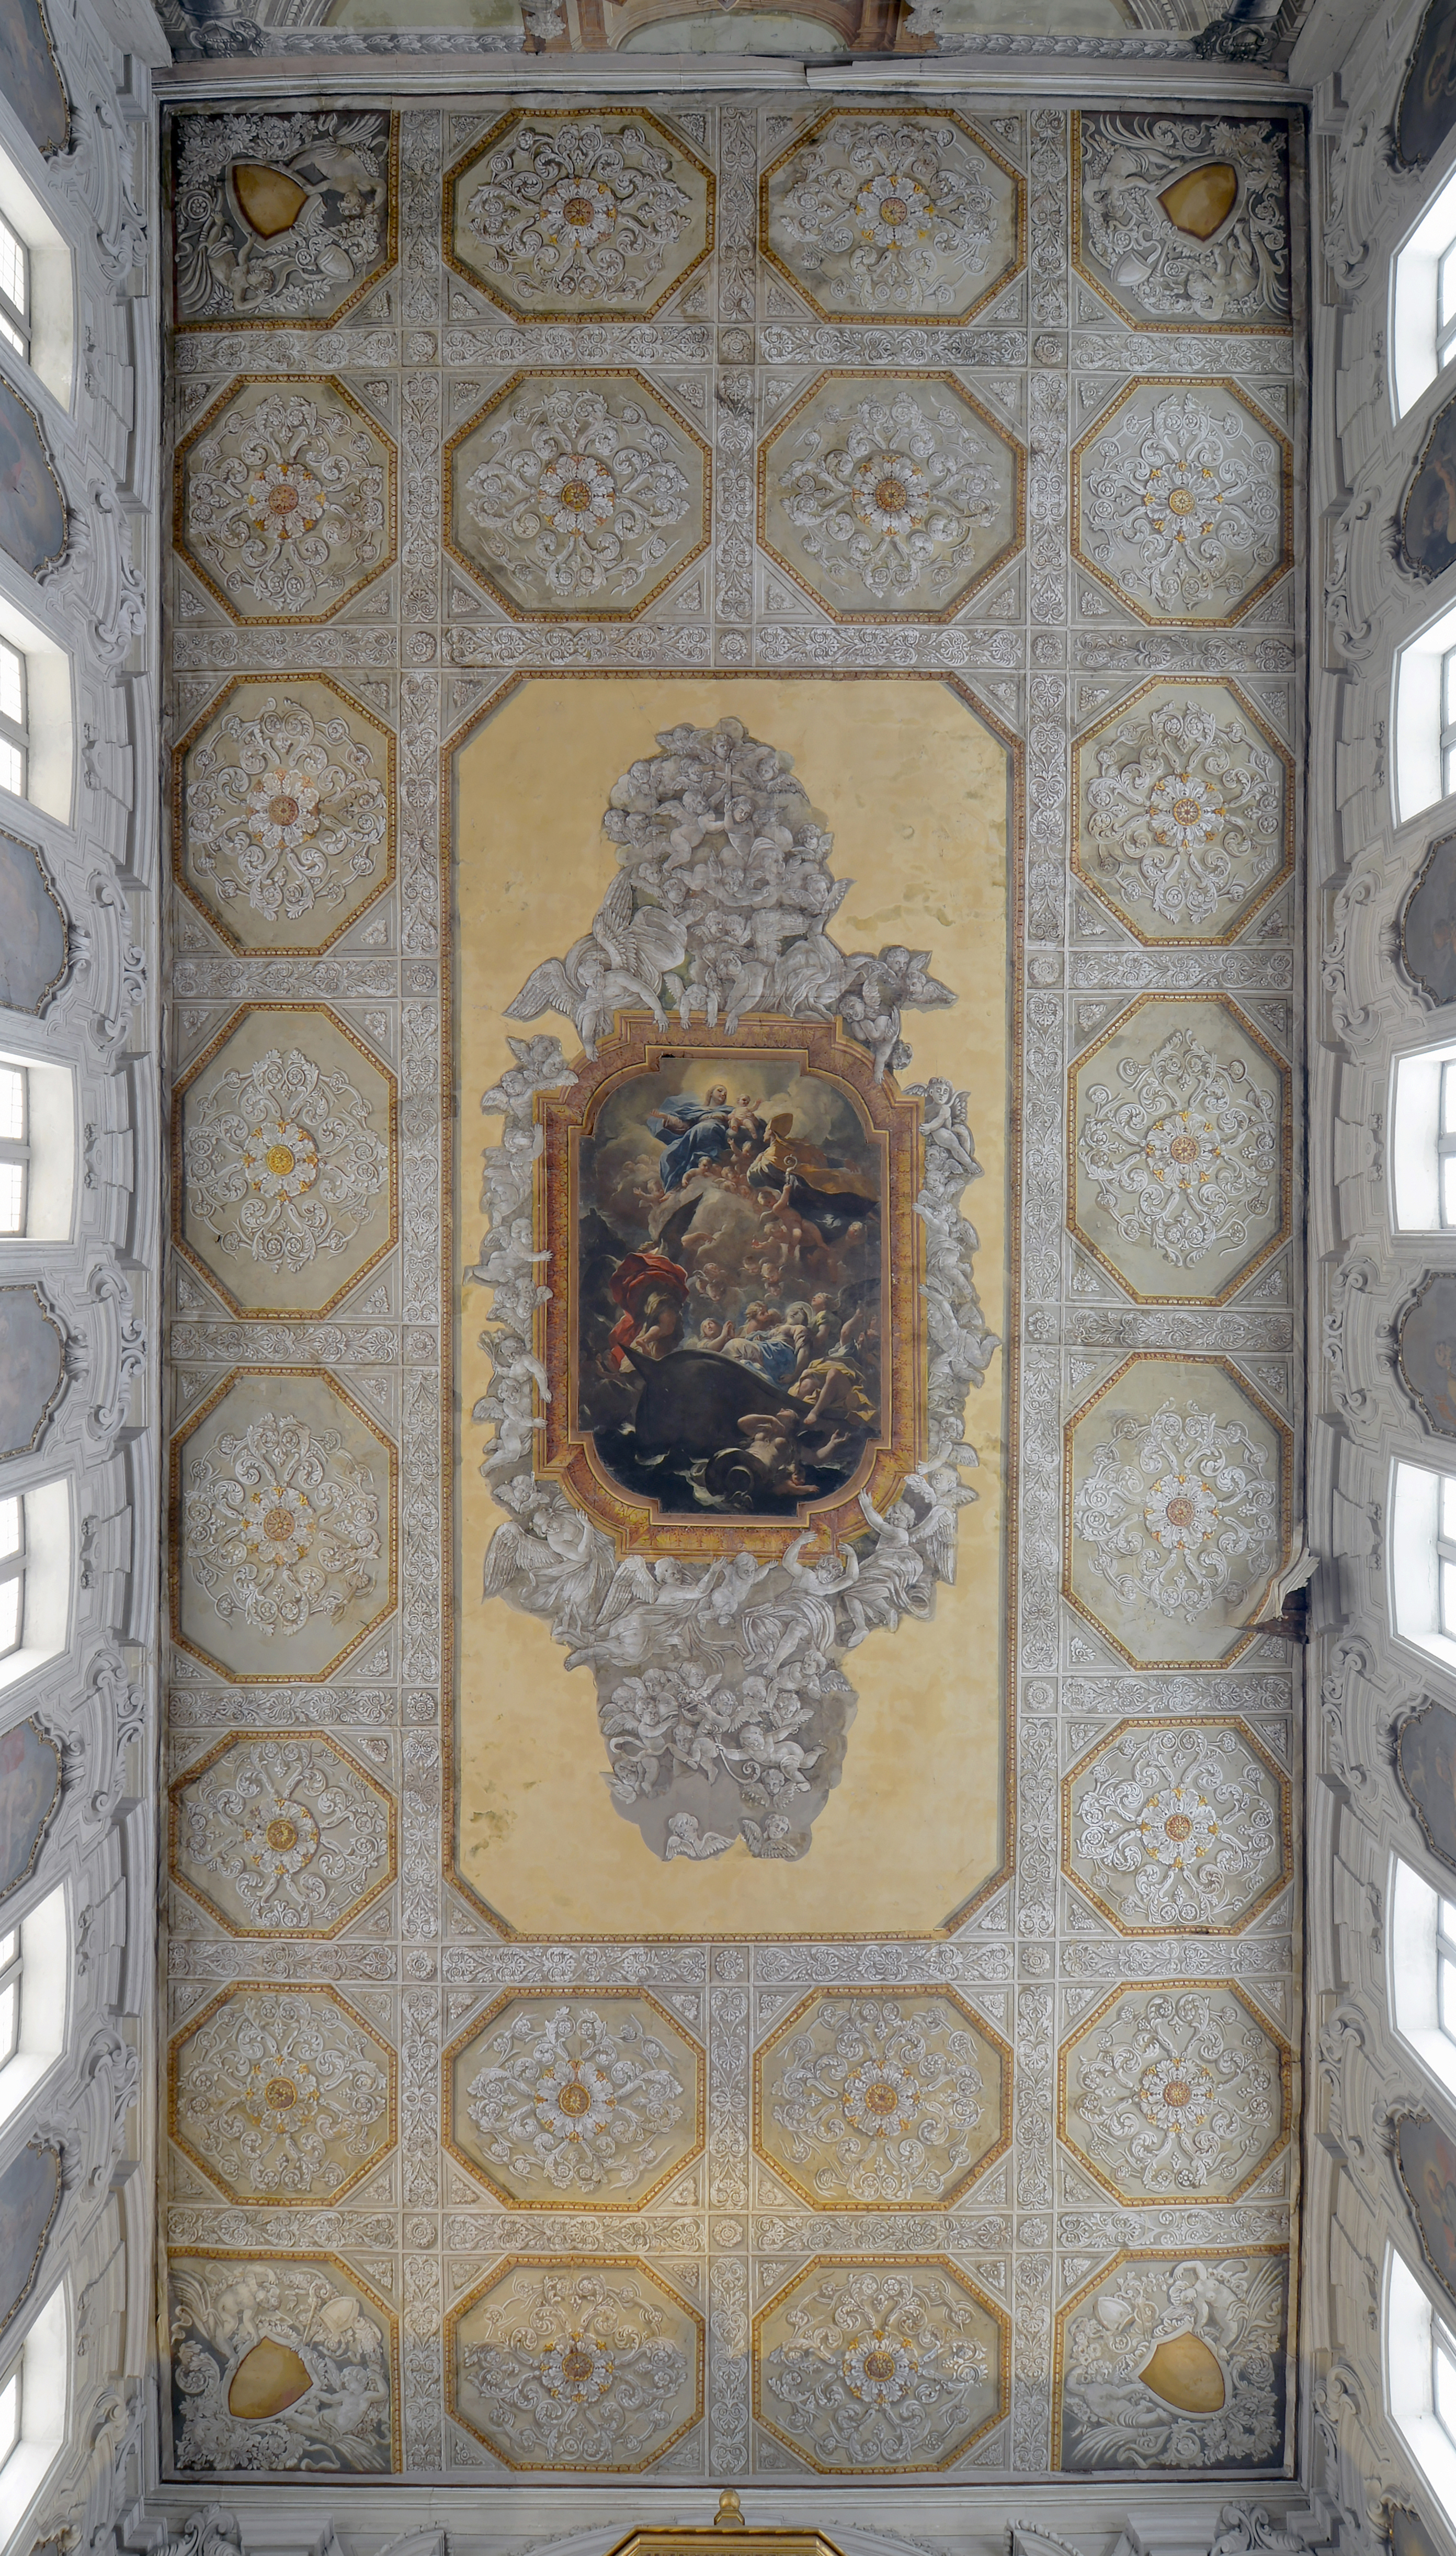 Cappella di Santa Restituta - Ceiling